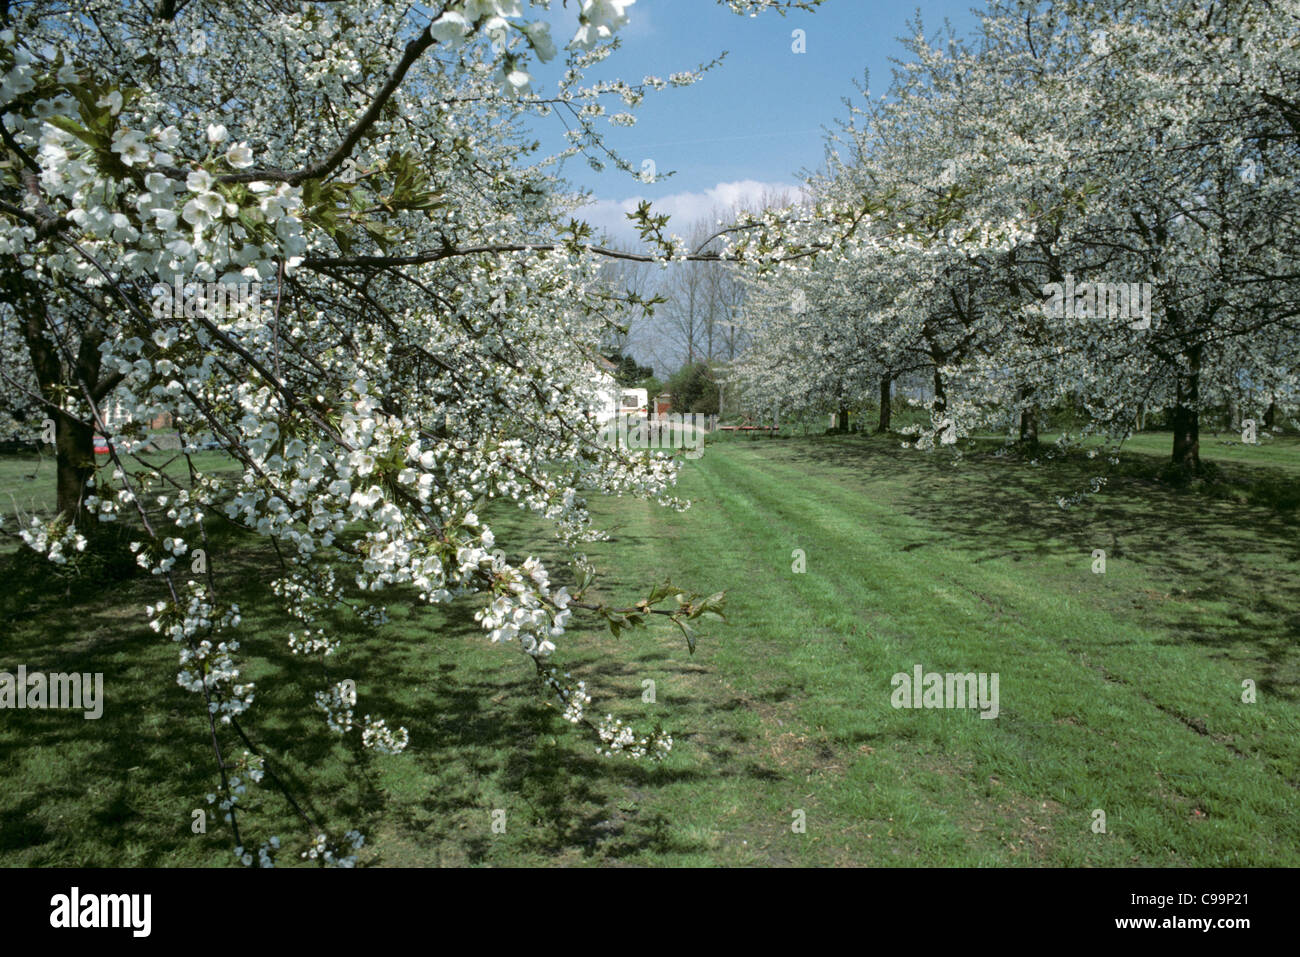 Ben stabilito frutteto di grandi alberi di ciliegio in piena fioritura Foto Stock